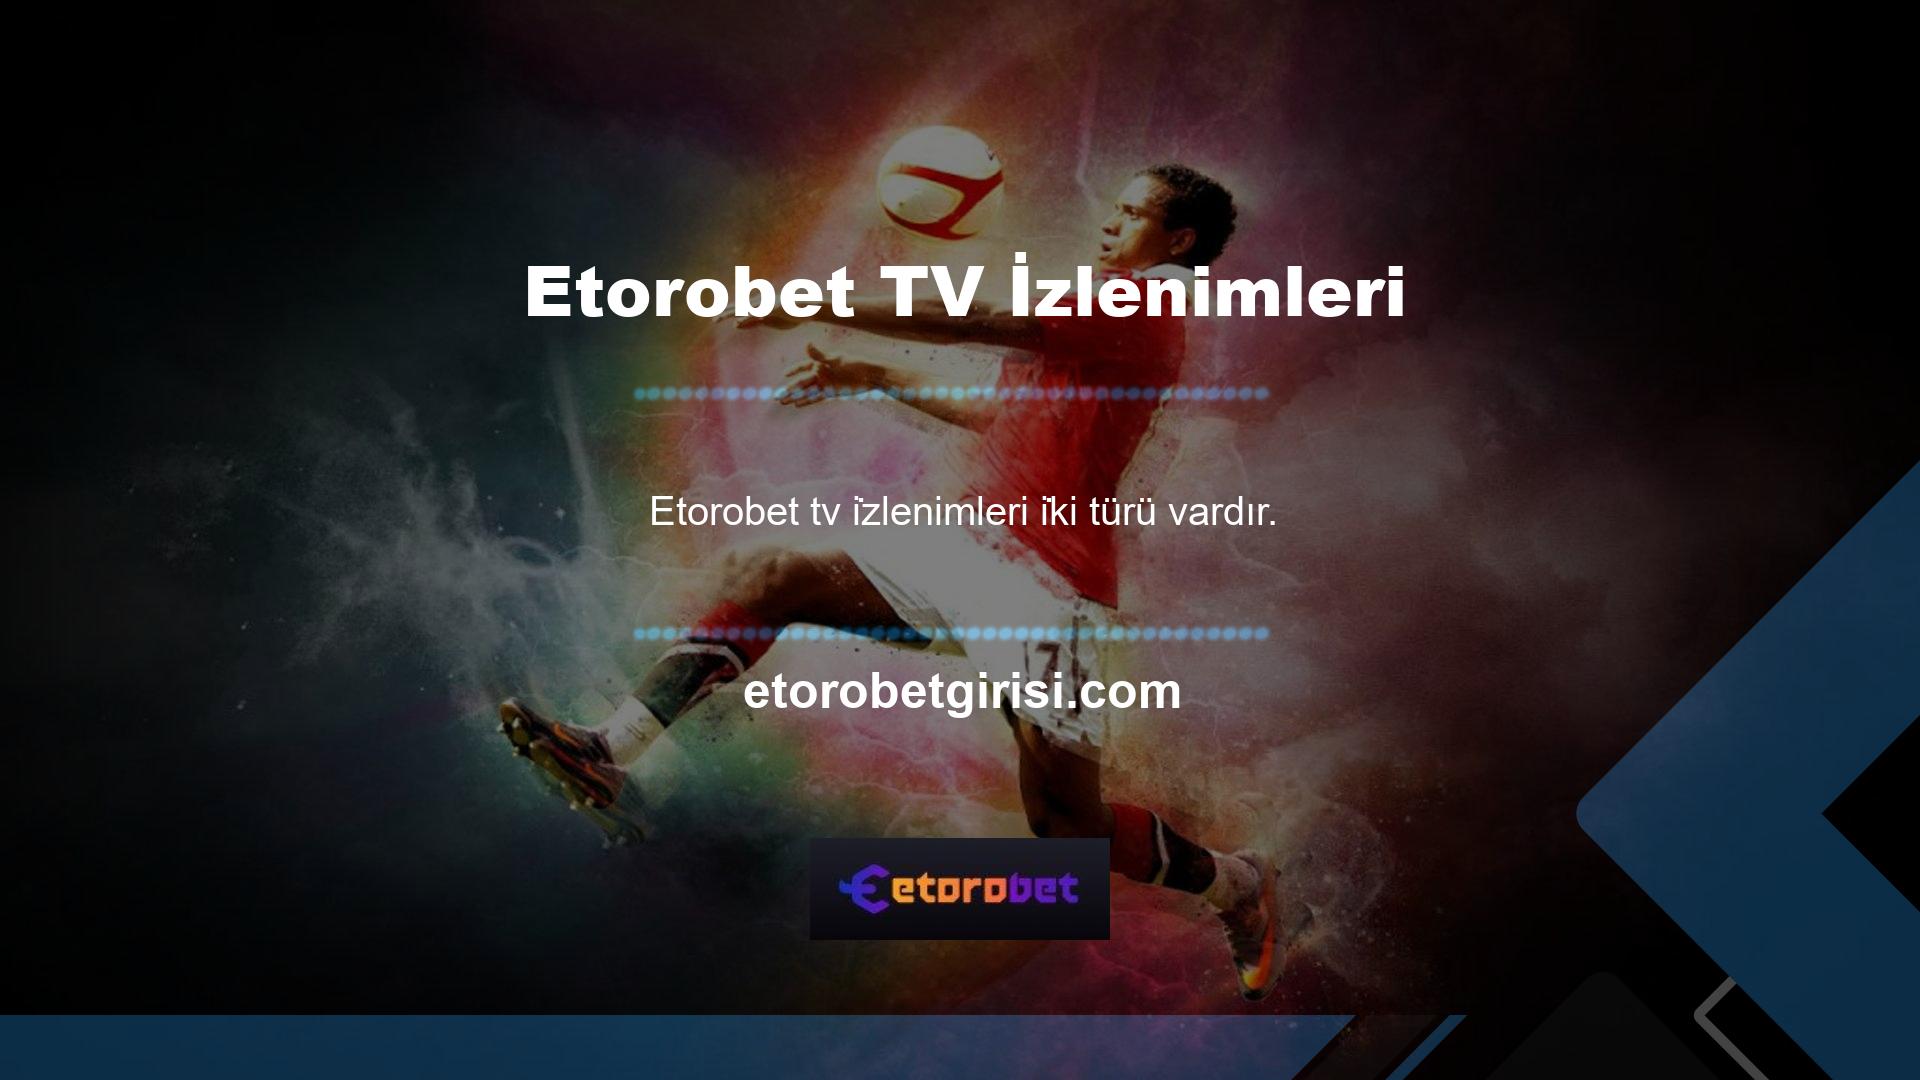 Bunun için öncelikle siteye giriş yapın ve üst kısımda bulunan Etorobet tv'ye tıklayın